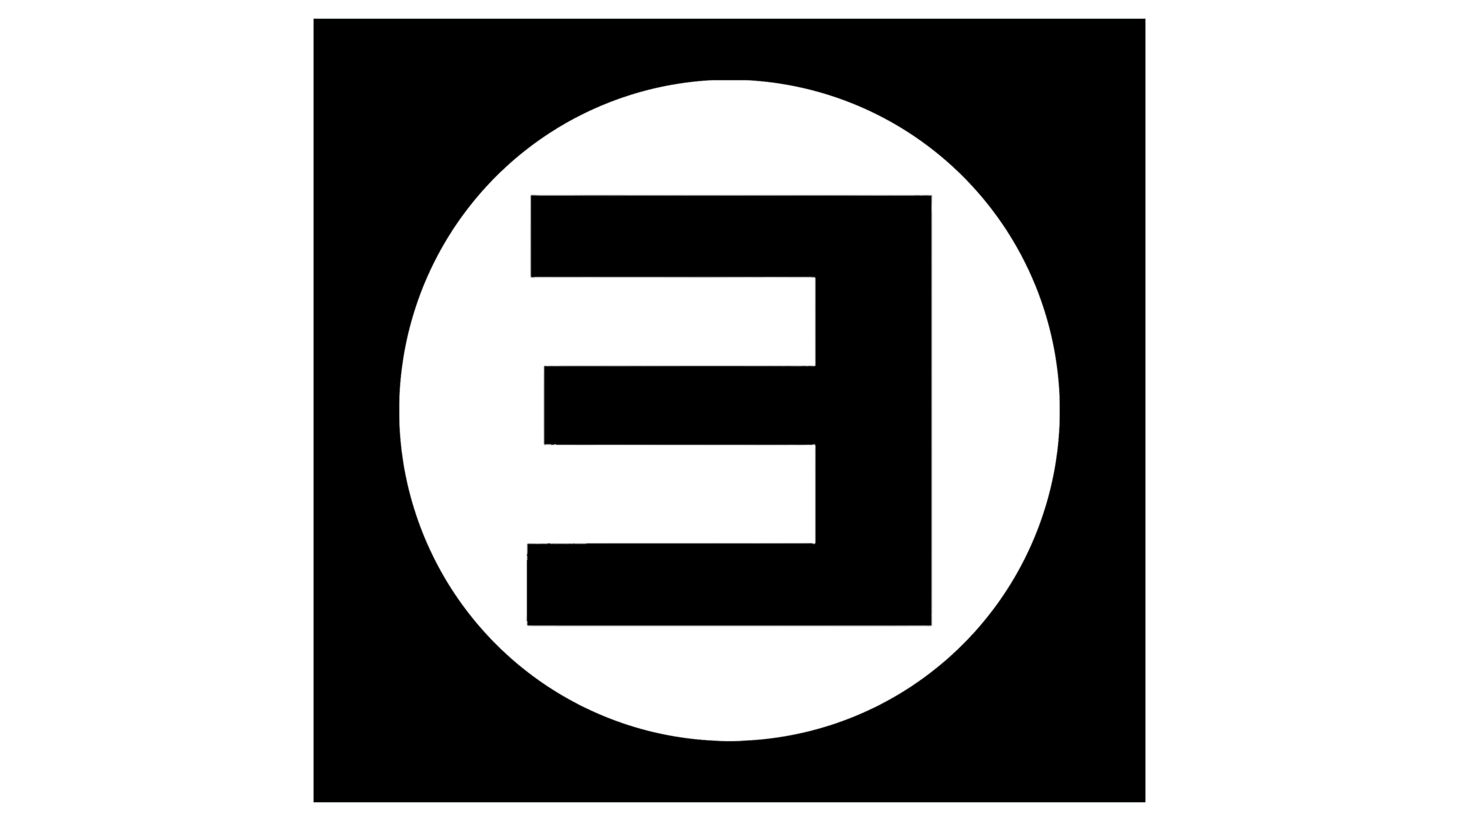 Eminem logo